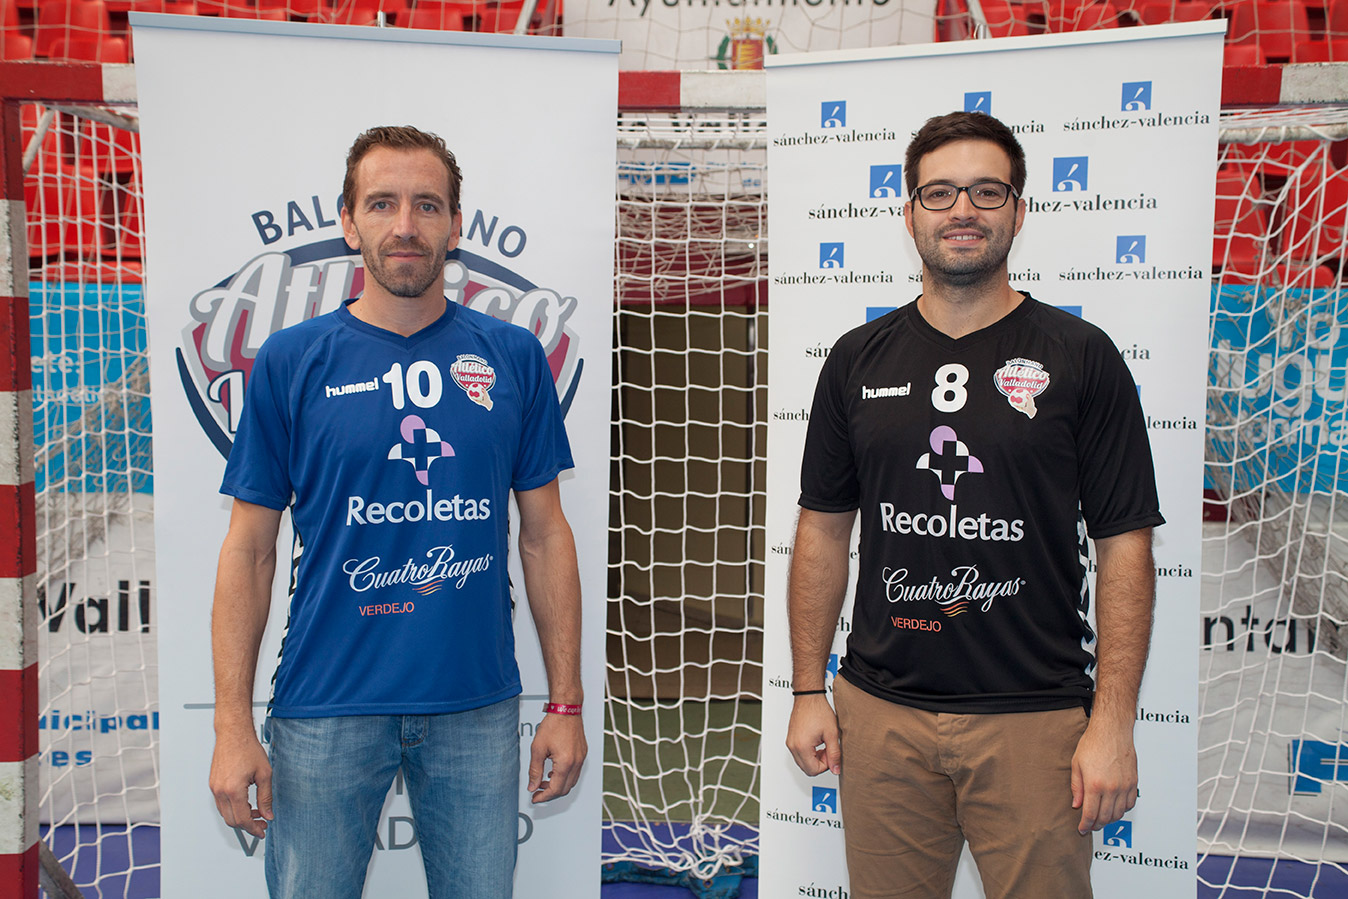 El Atlético Valladolid presenta su nueva equipación y patrocinadores para la temporada 2015-2016 | Galería 1 / 4